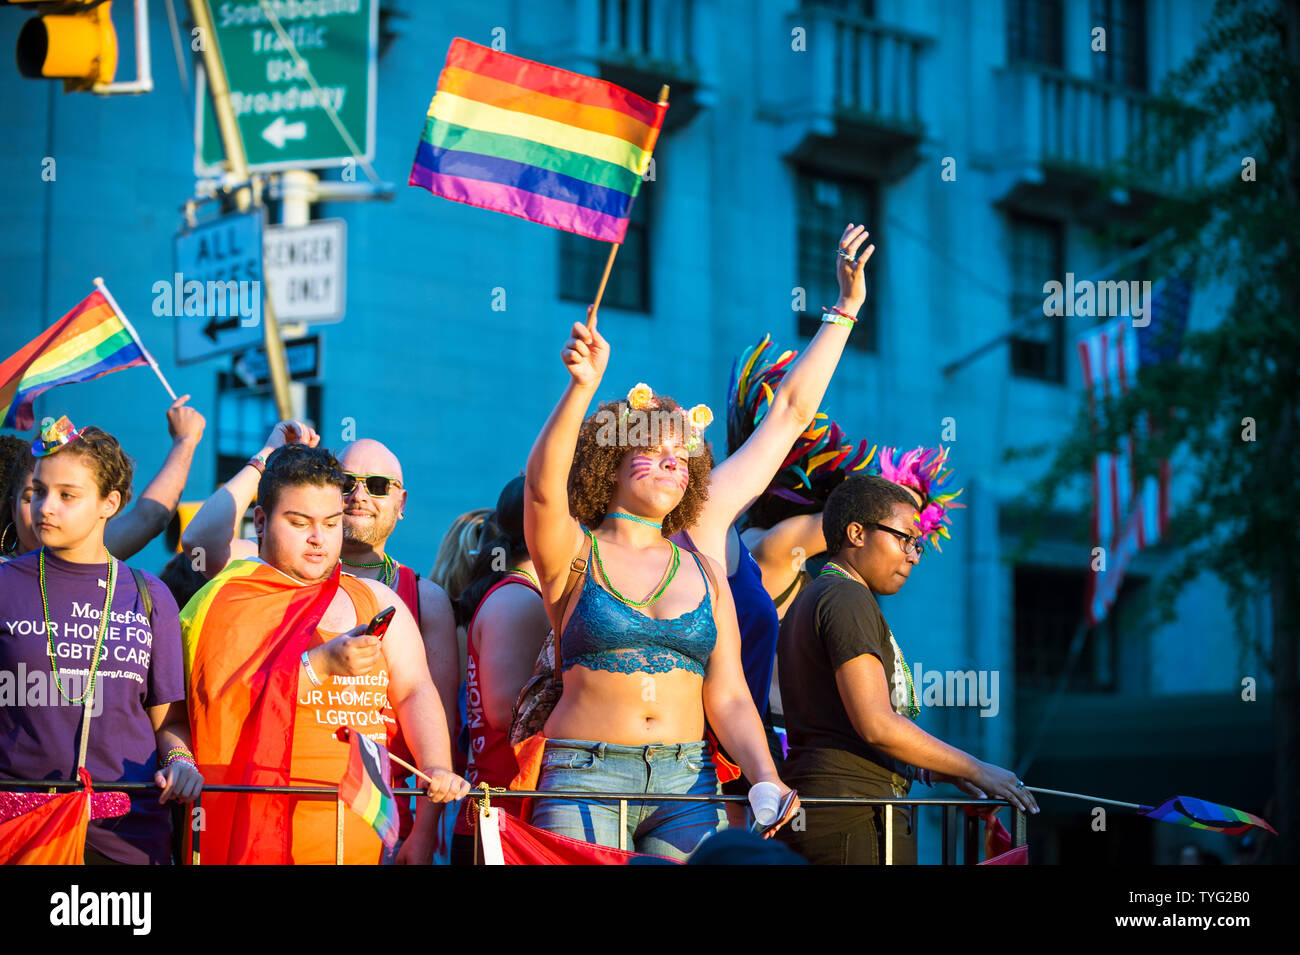 NEW YORK - 25 juin 2017 : Les participants port shirts parrainé par Montefiore Medical Center agitent des drapeaux sur un flotteur dans la Parade de la gay Pride. Banque D'Images